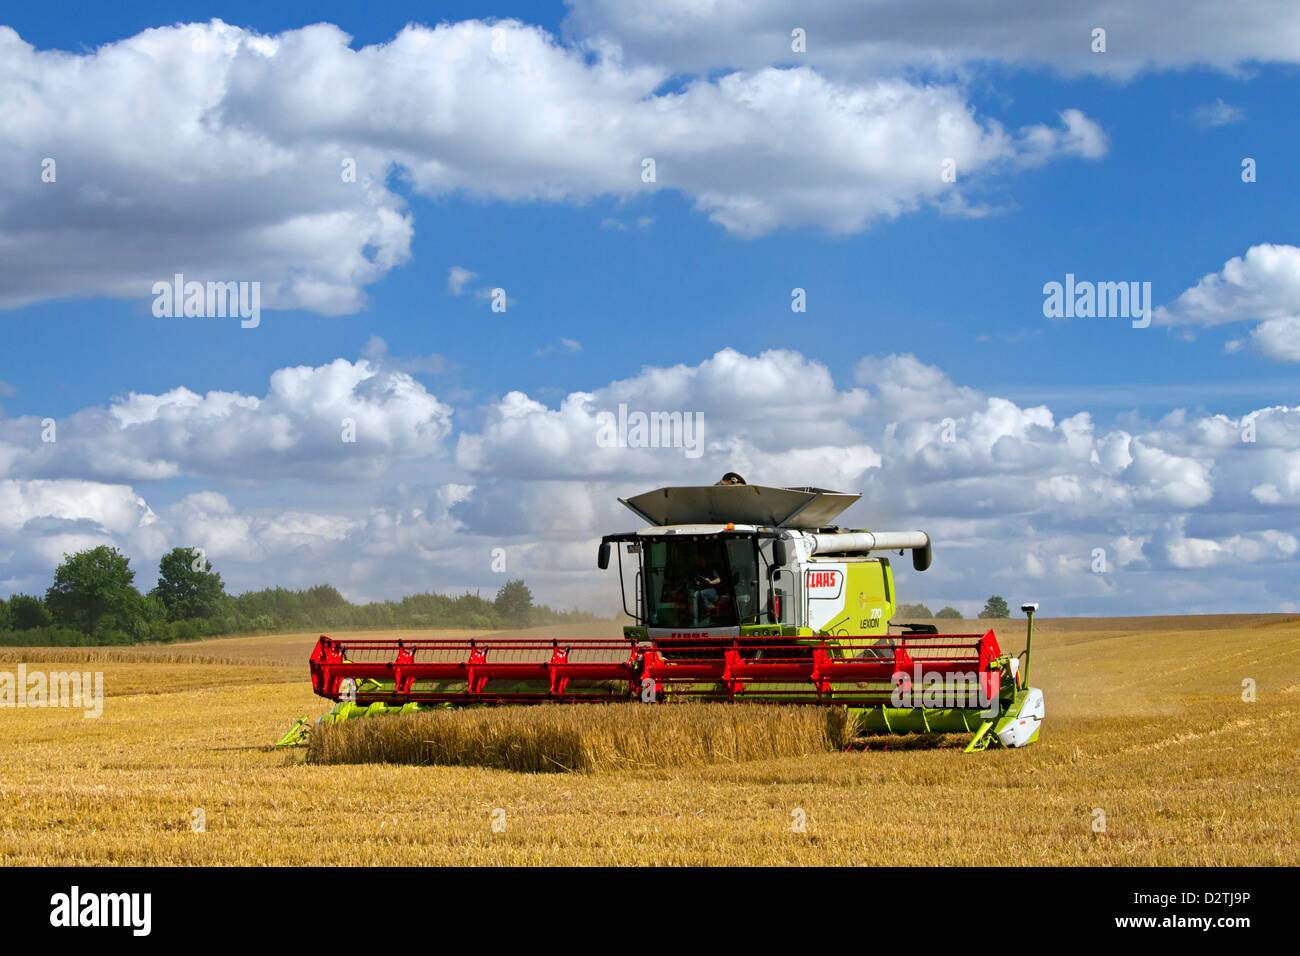 Agriculteur de moissonneuse-batteuse, la récolte de céréales de blé / blé domaine des terres agricoles de l'été Banque D'Images